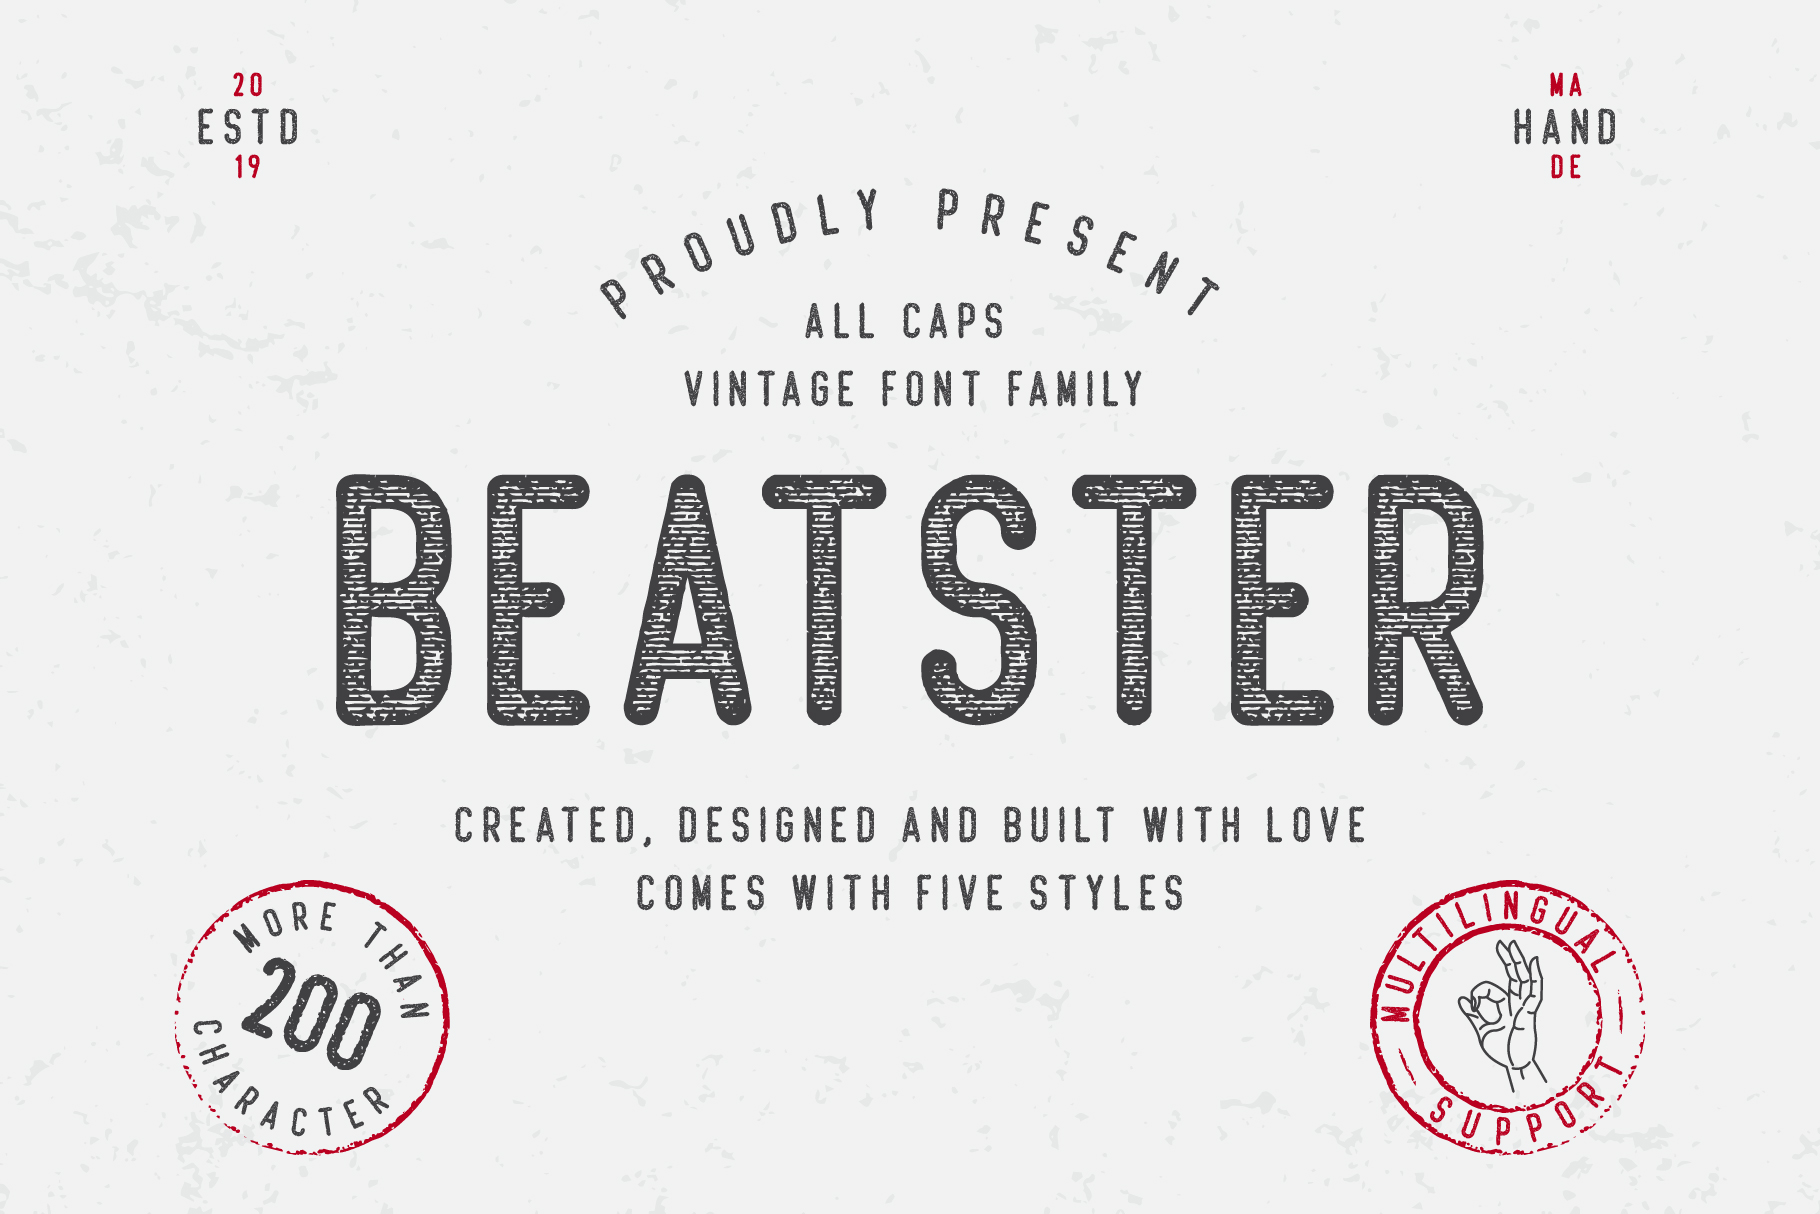 Beatster Demo craft